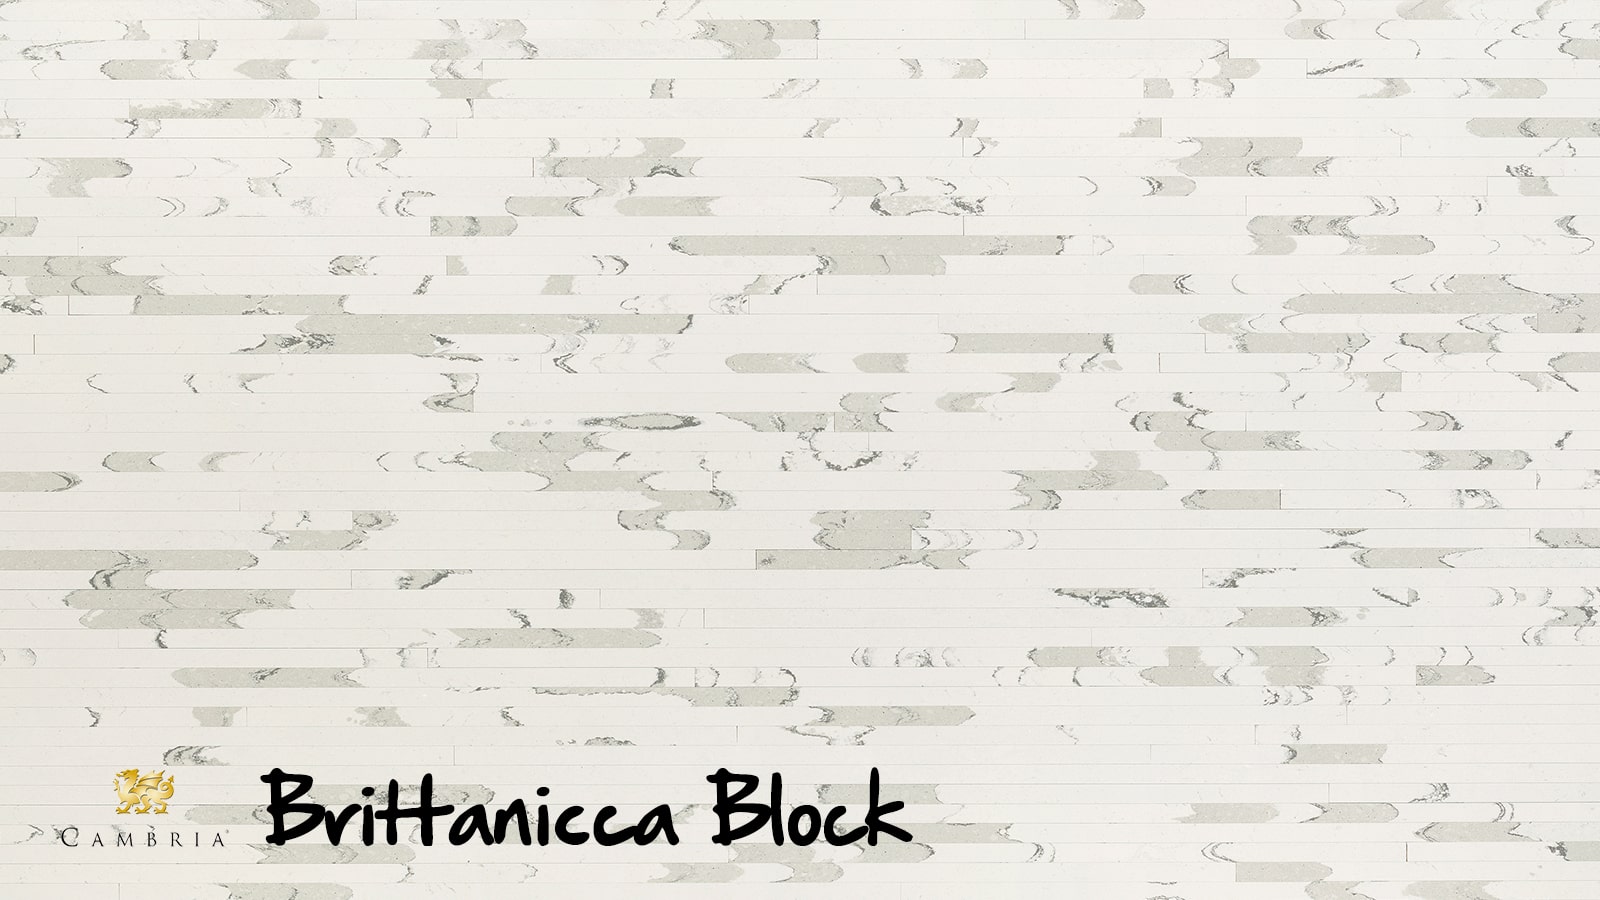 Brittanicca Block